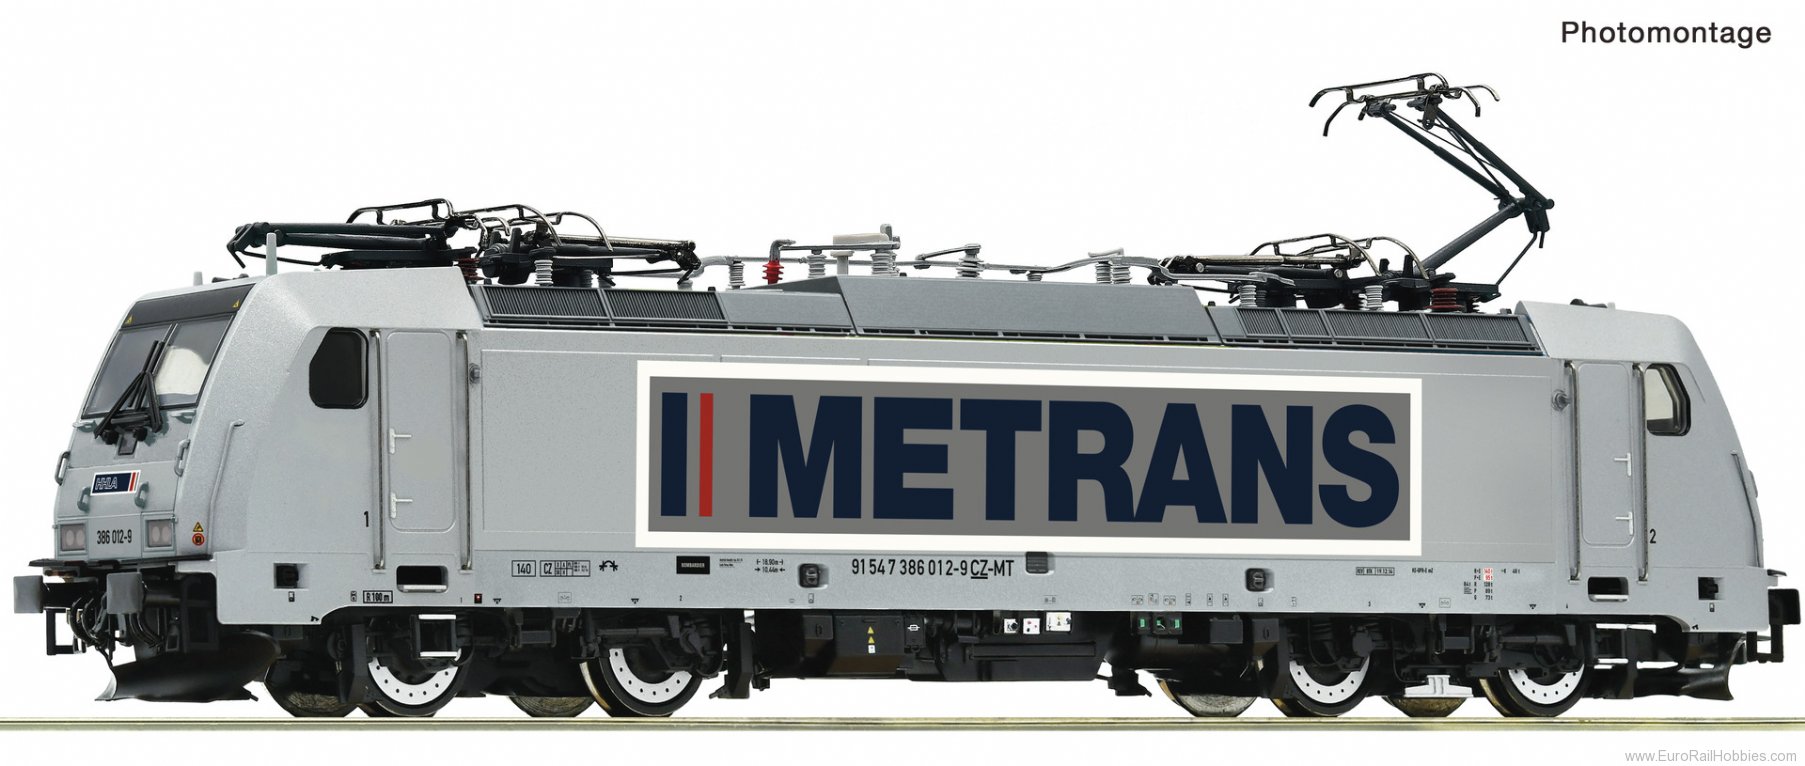 Roco 7500016 Metrans Electric locomotive 386 012-9